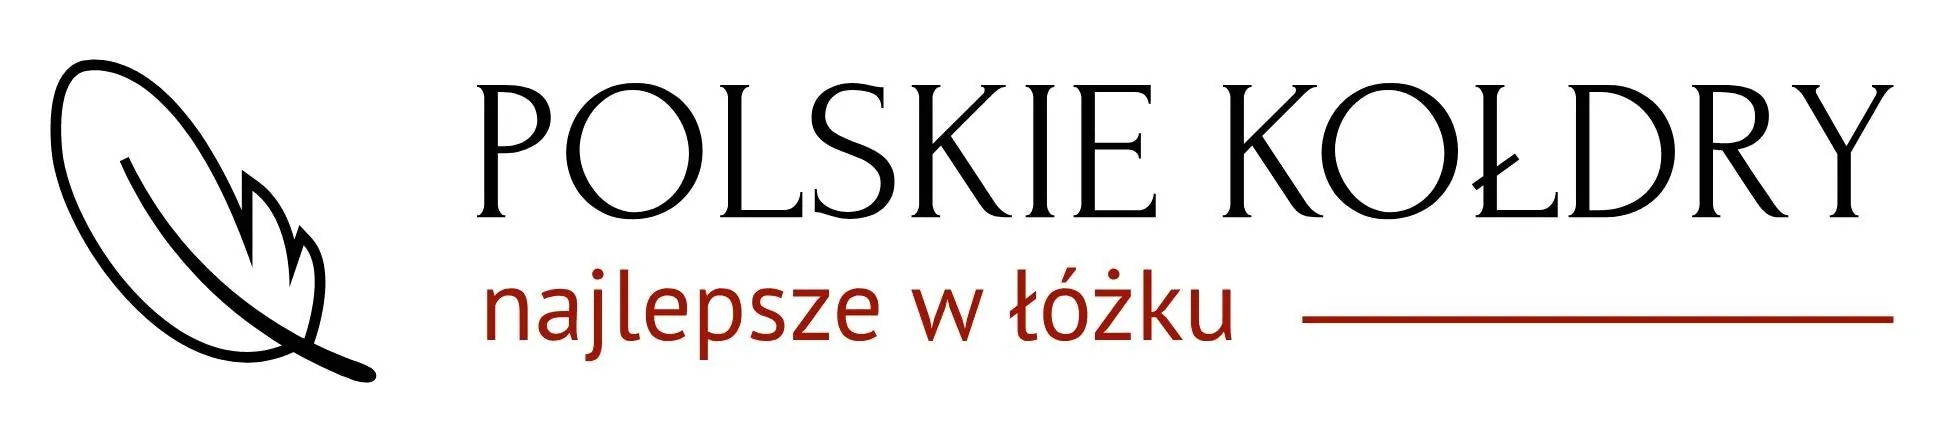 Polskie Kołdry logo